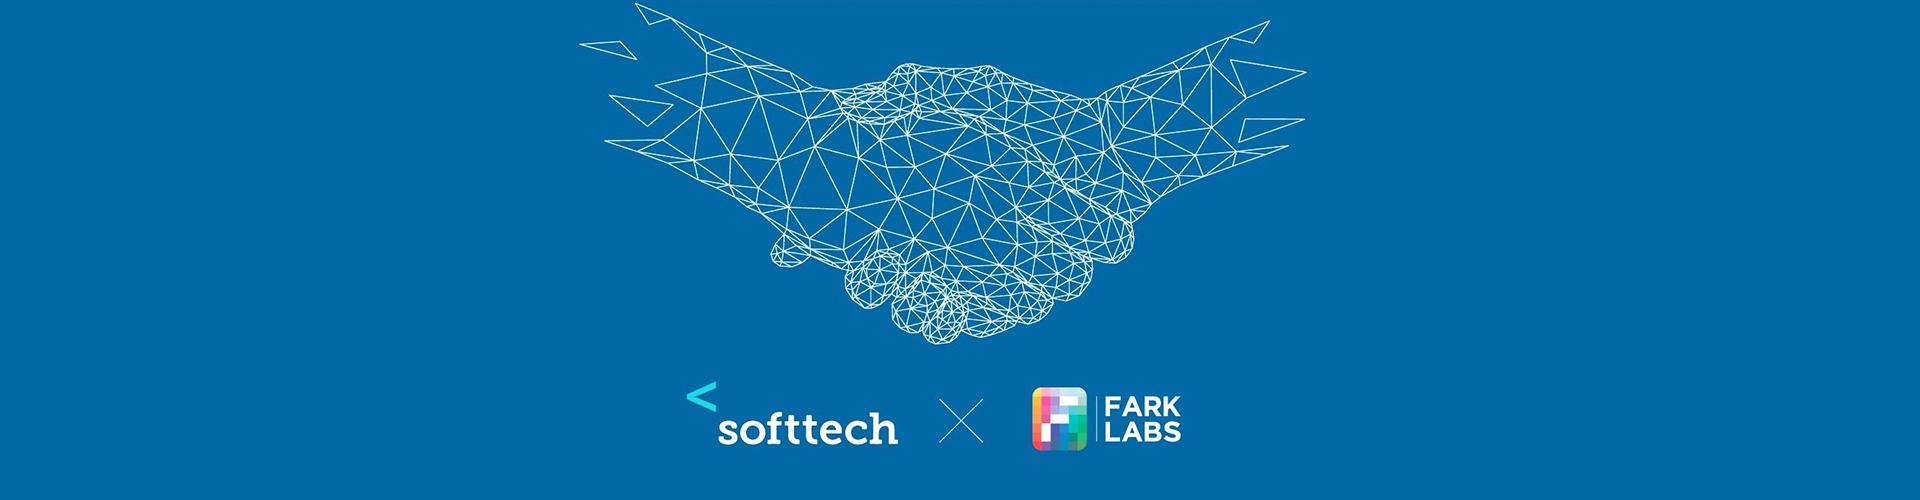 Türkiye’nin yapay zeka çalışmalarına güçlü destek Softtech ve Fark Labs’tan yapay zeka girişimcileri için iş birliği